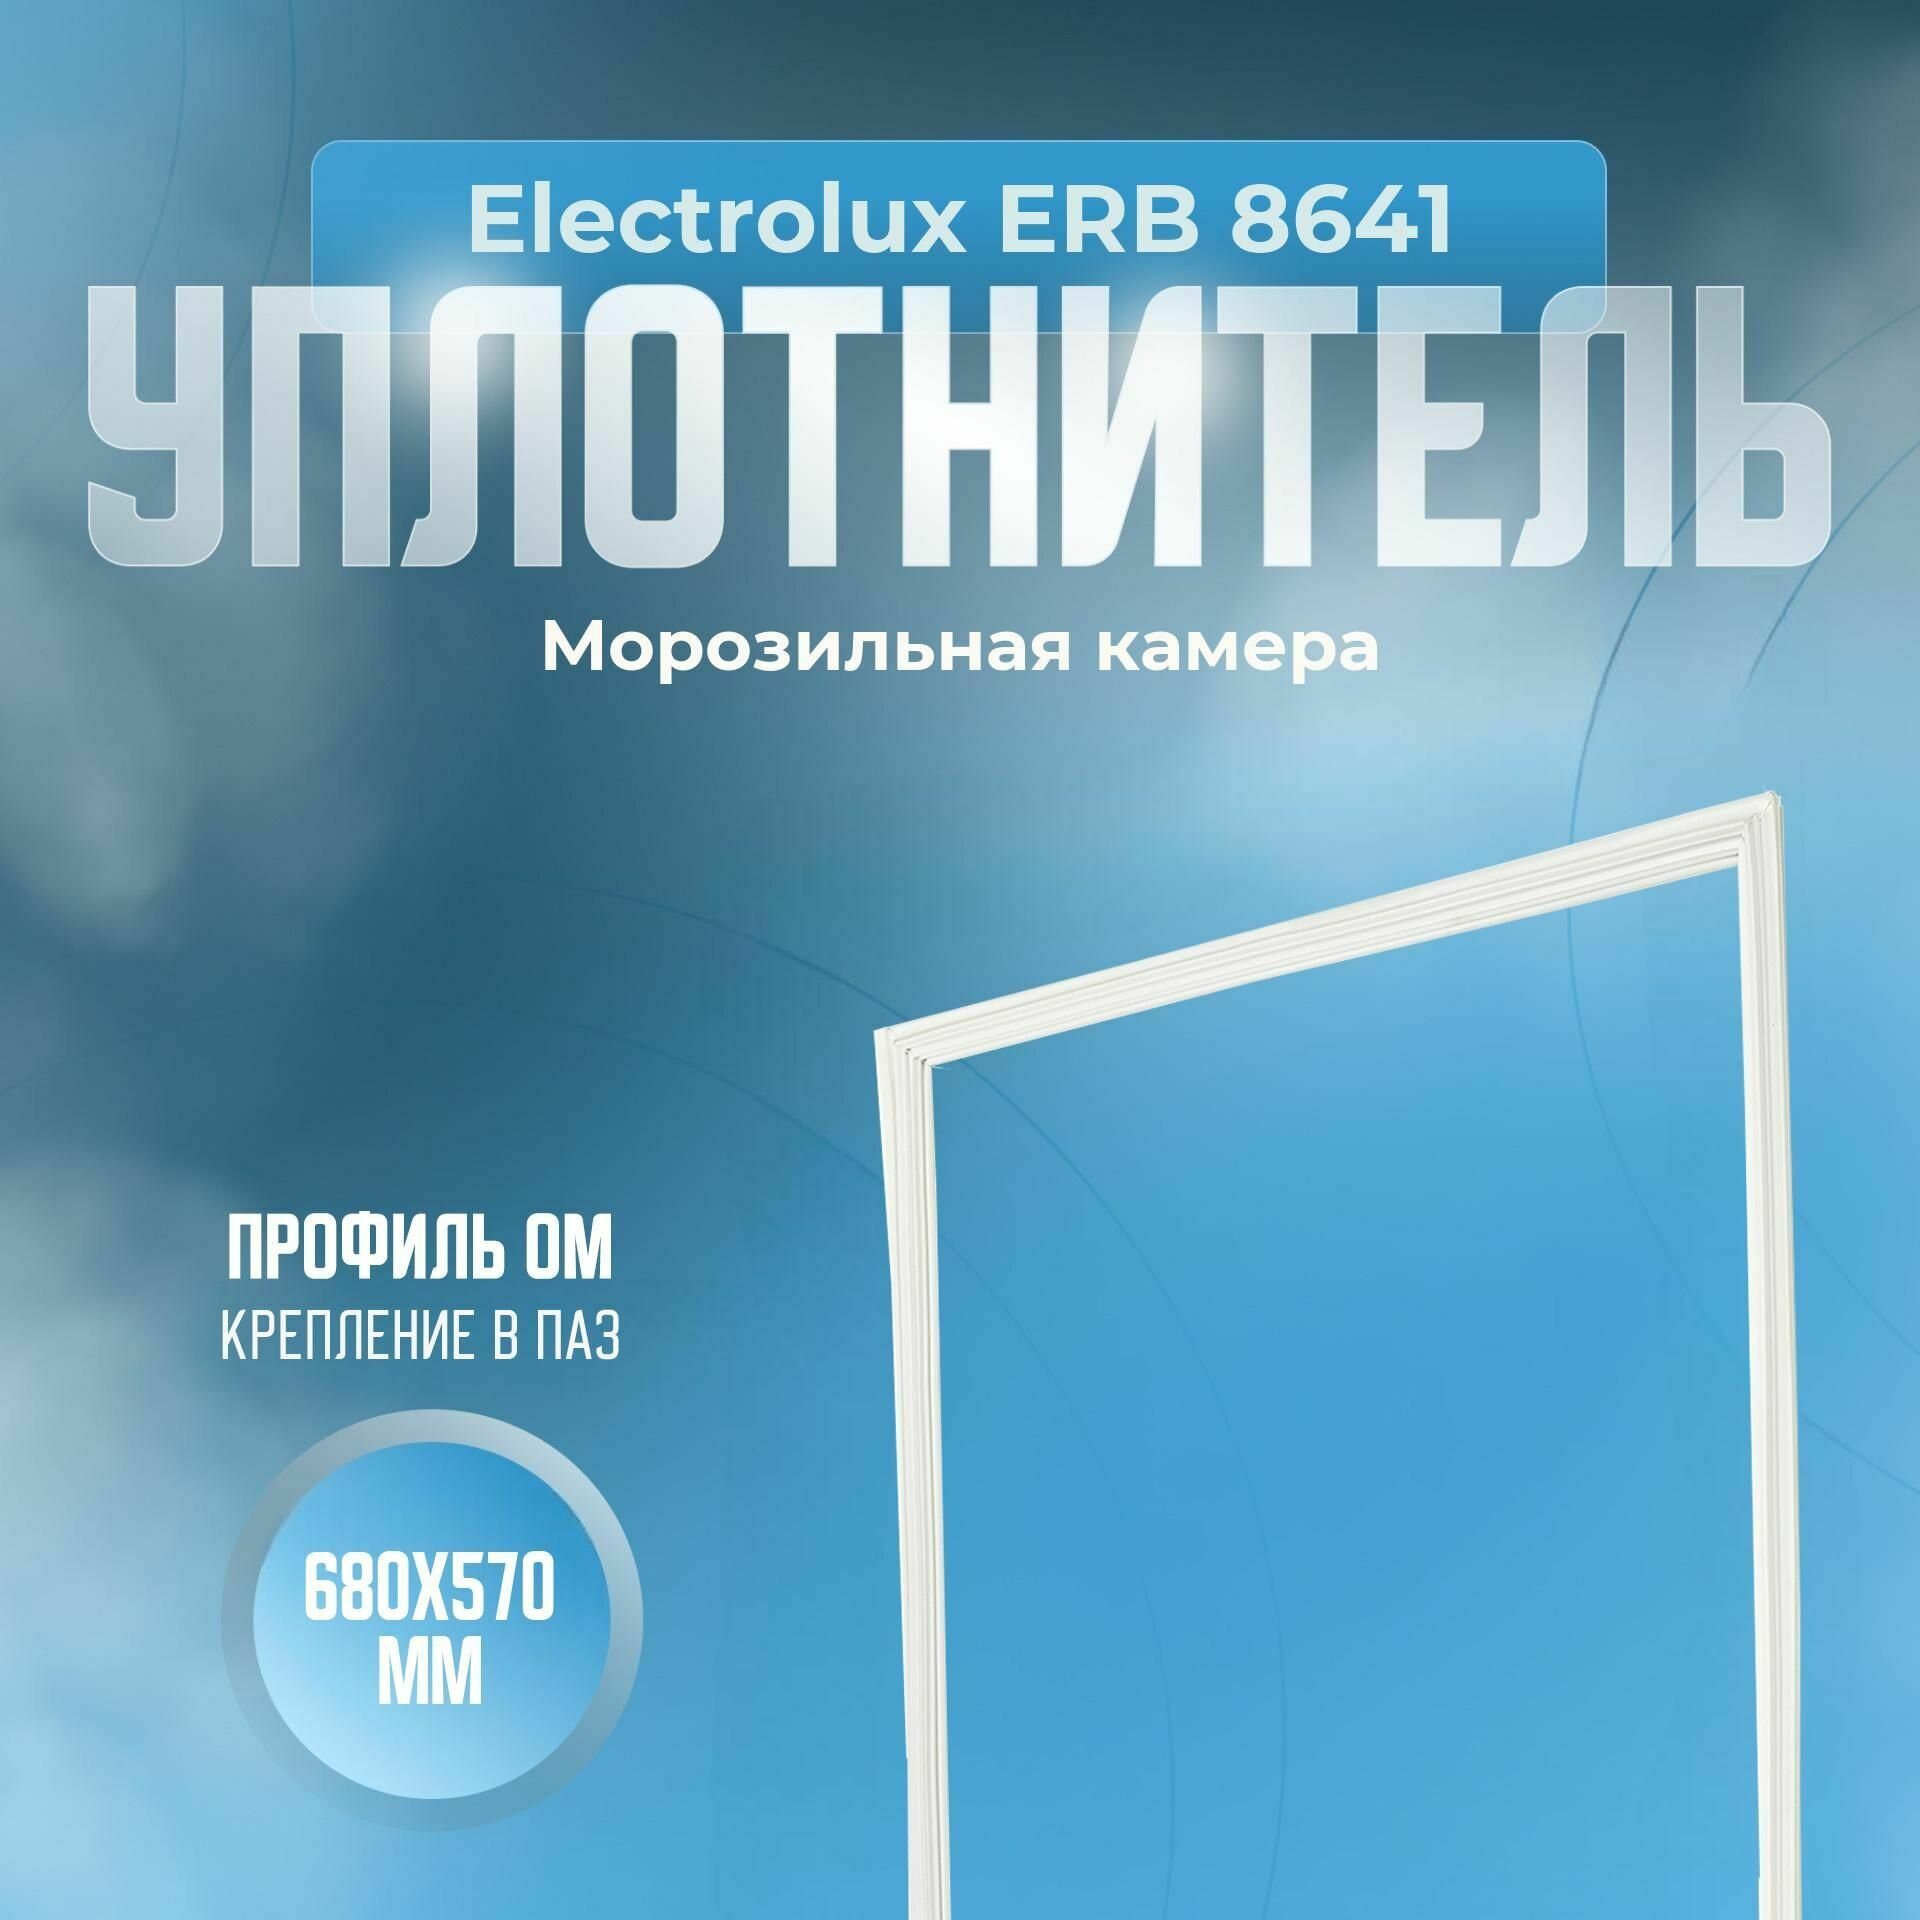 Уплотнитель Electrolux ERB 8641. м. к, Размер - 680х570 мм. ОМ